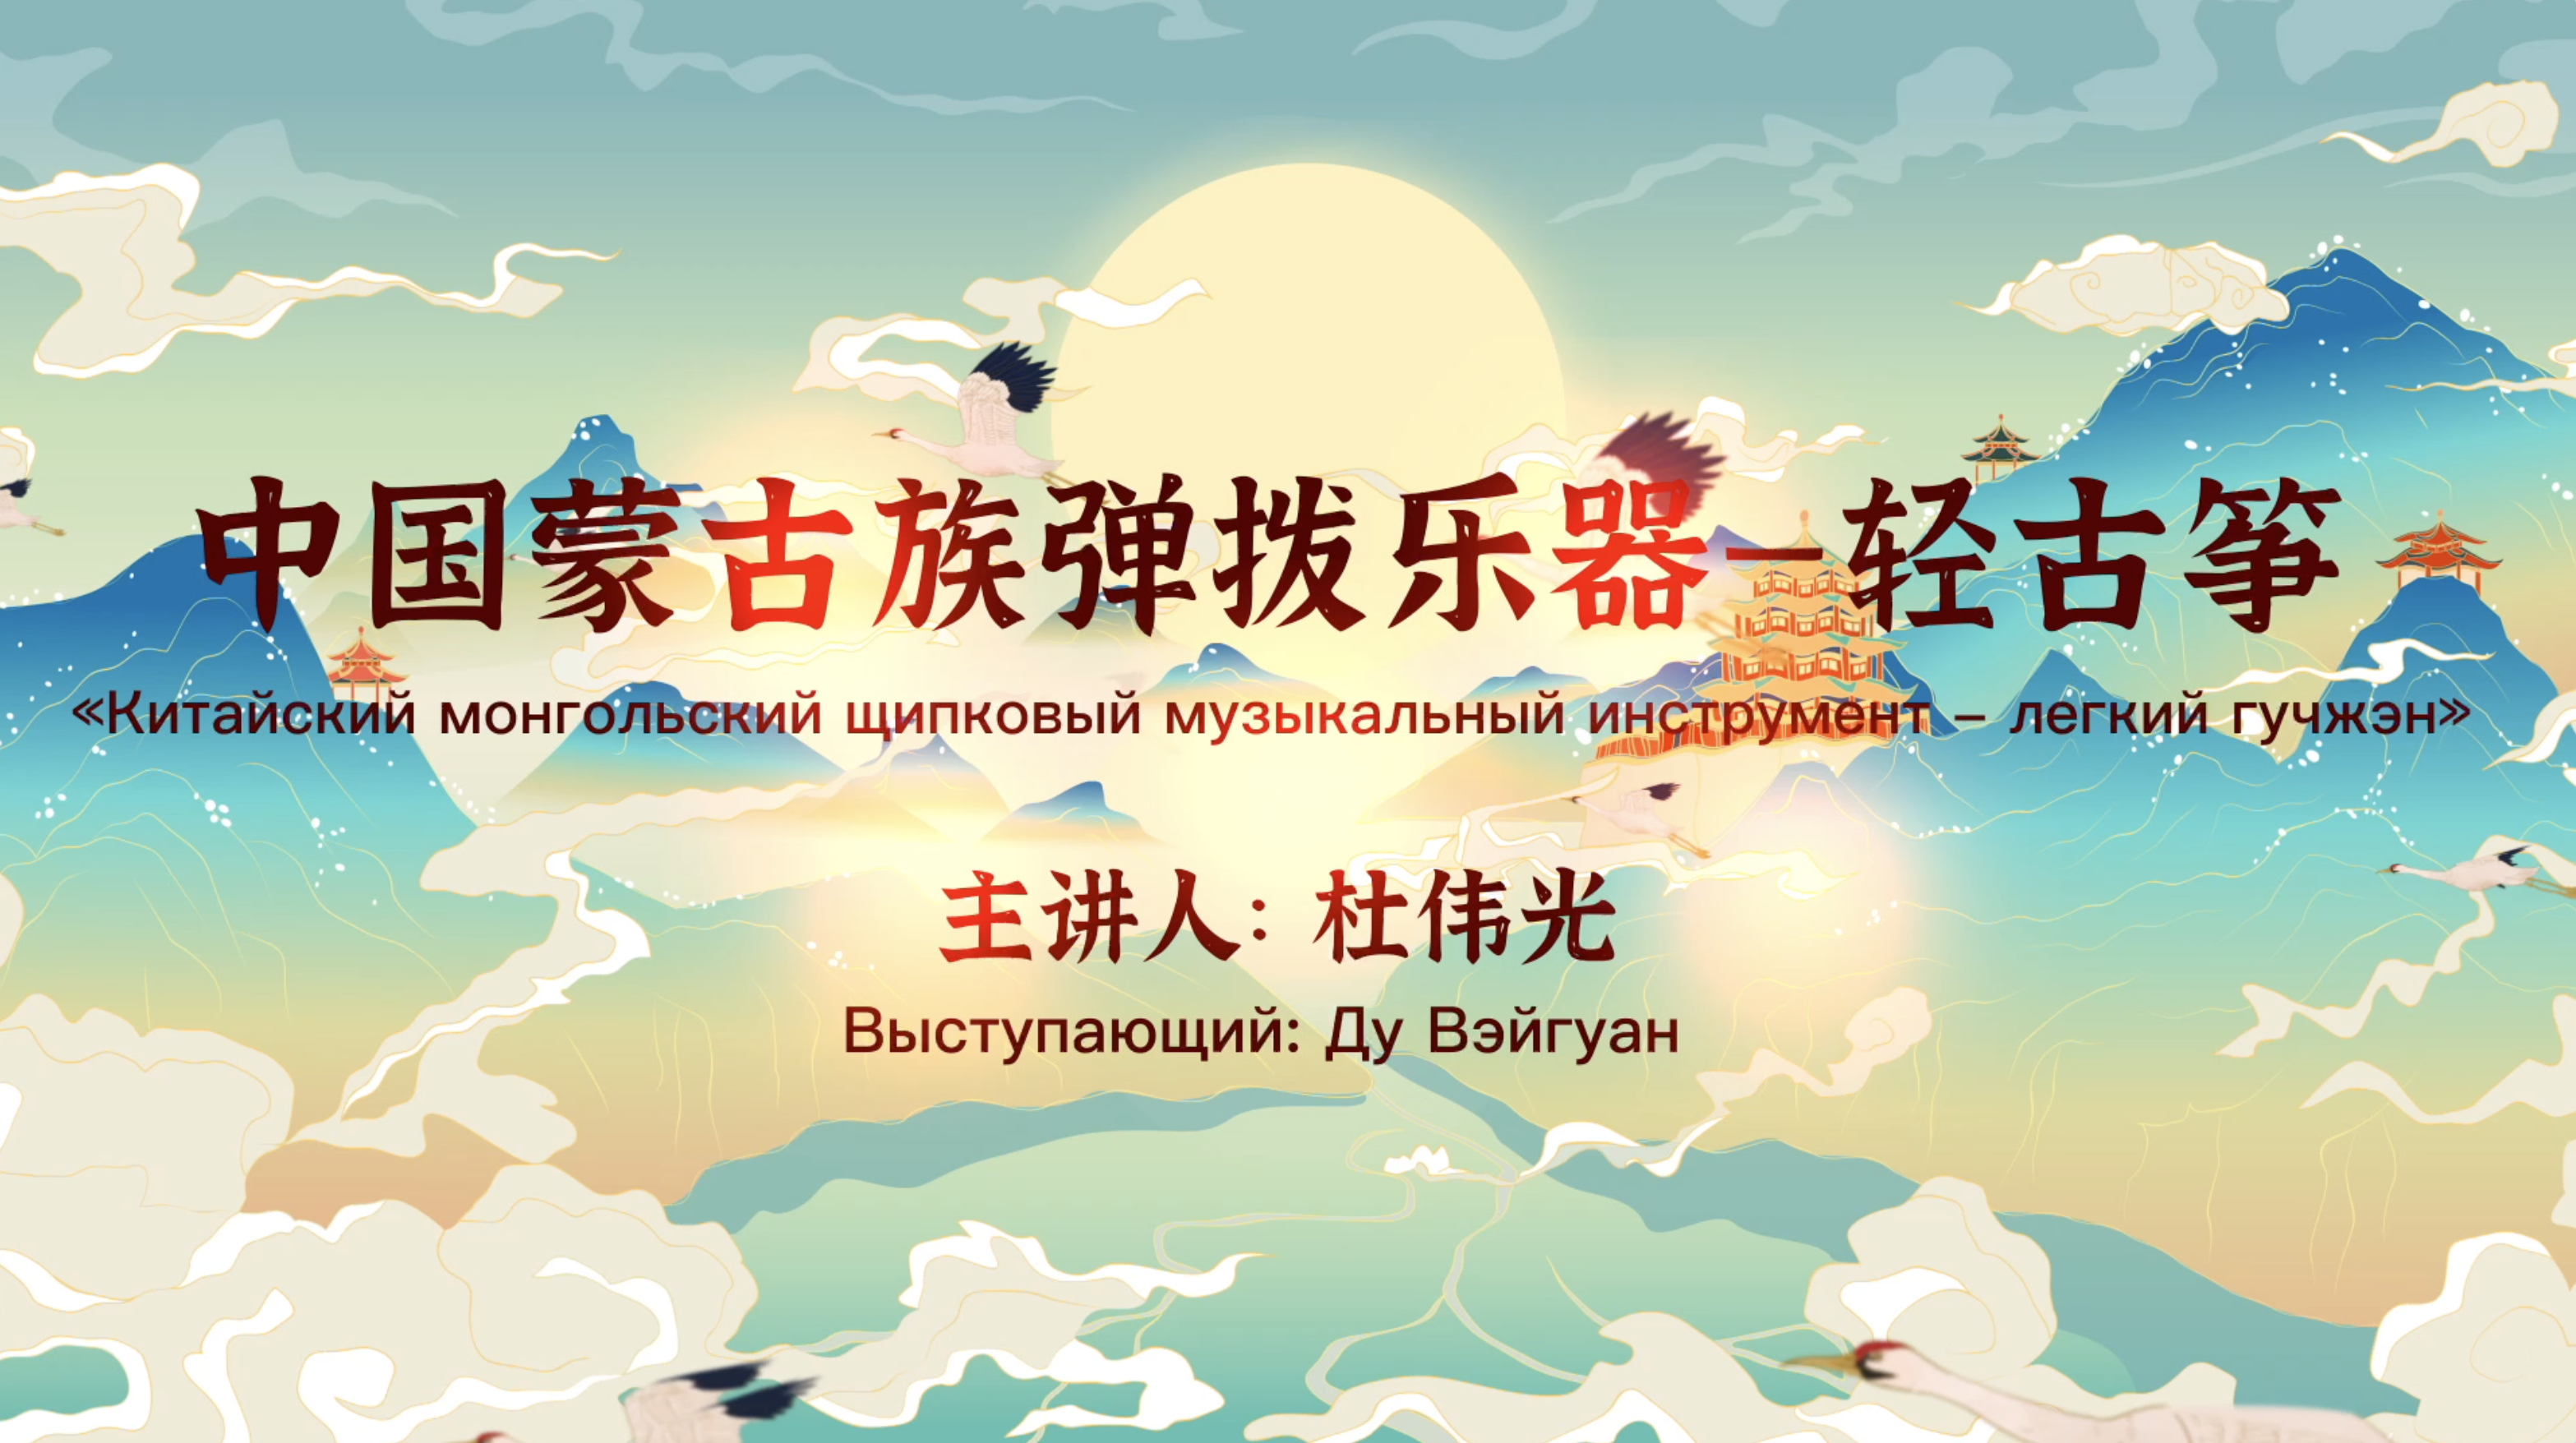 Национальные музыкальные инструменты Внутренней Монголии - легкий гучжэн